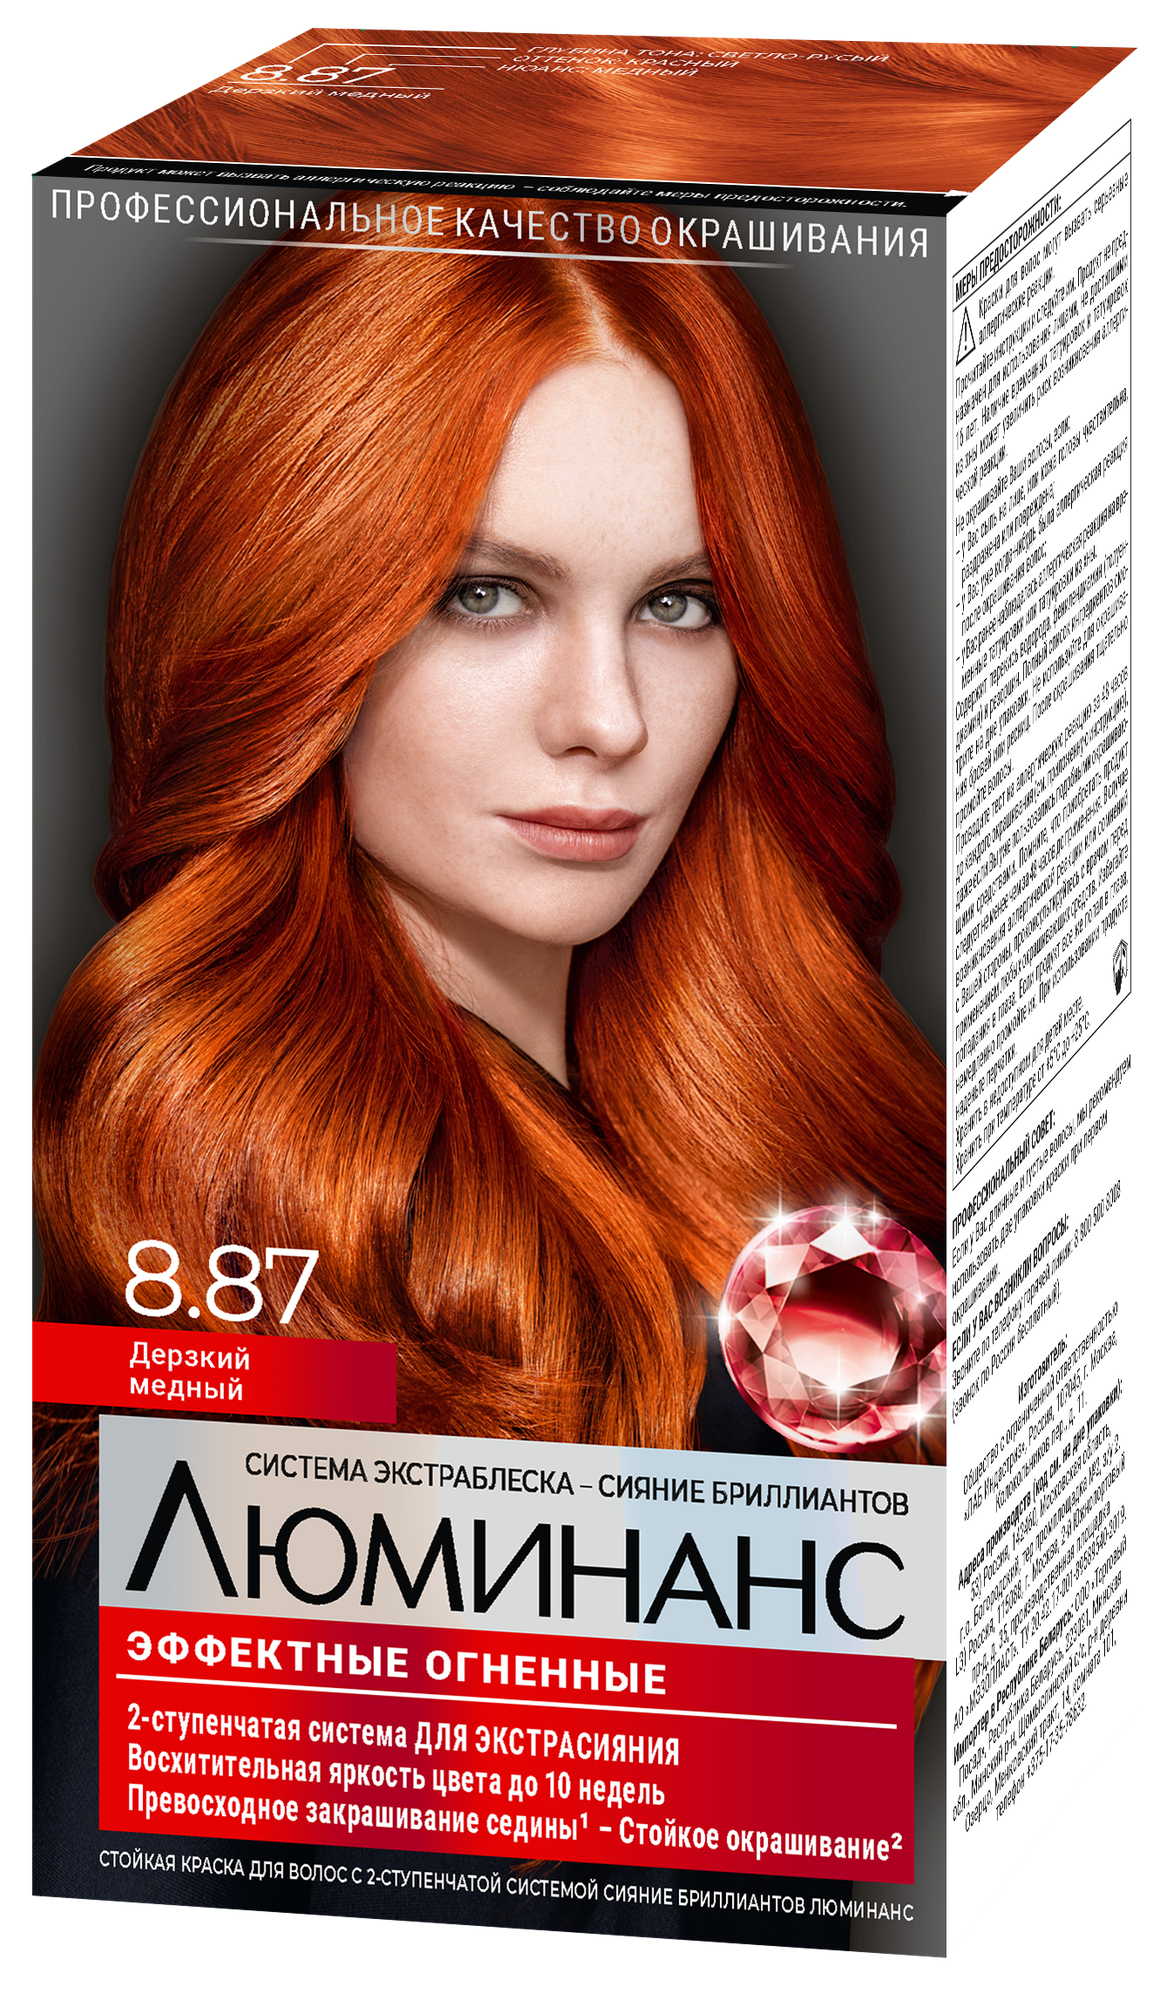 Люминанс краска для волос Эффектные огненные, 8.87 дерзкий медный, 150 мл — купить в интернет-магазине по низкой цене на Яндекс Маркете